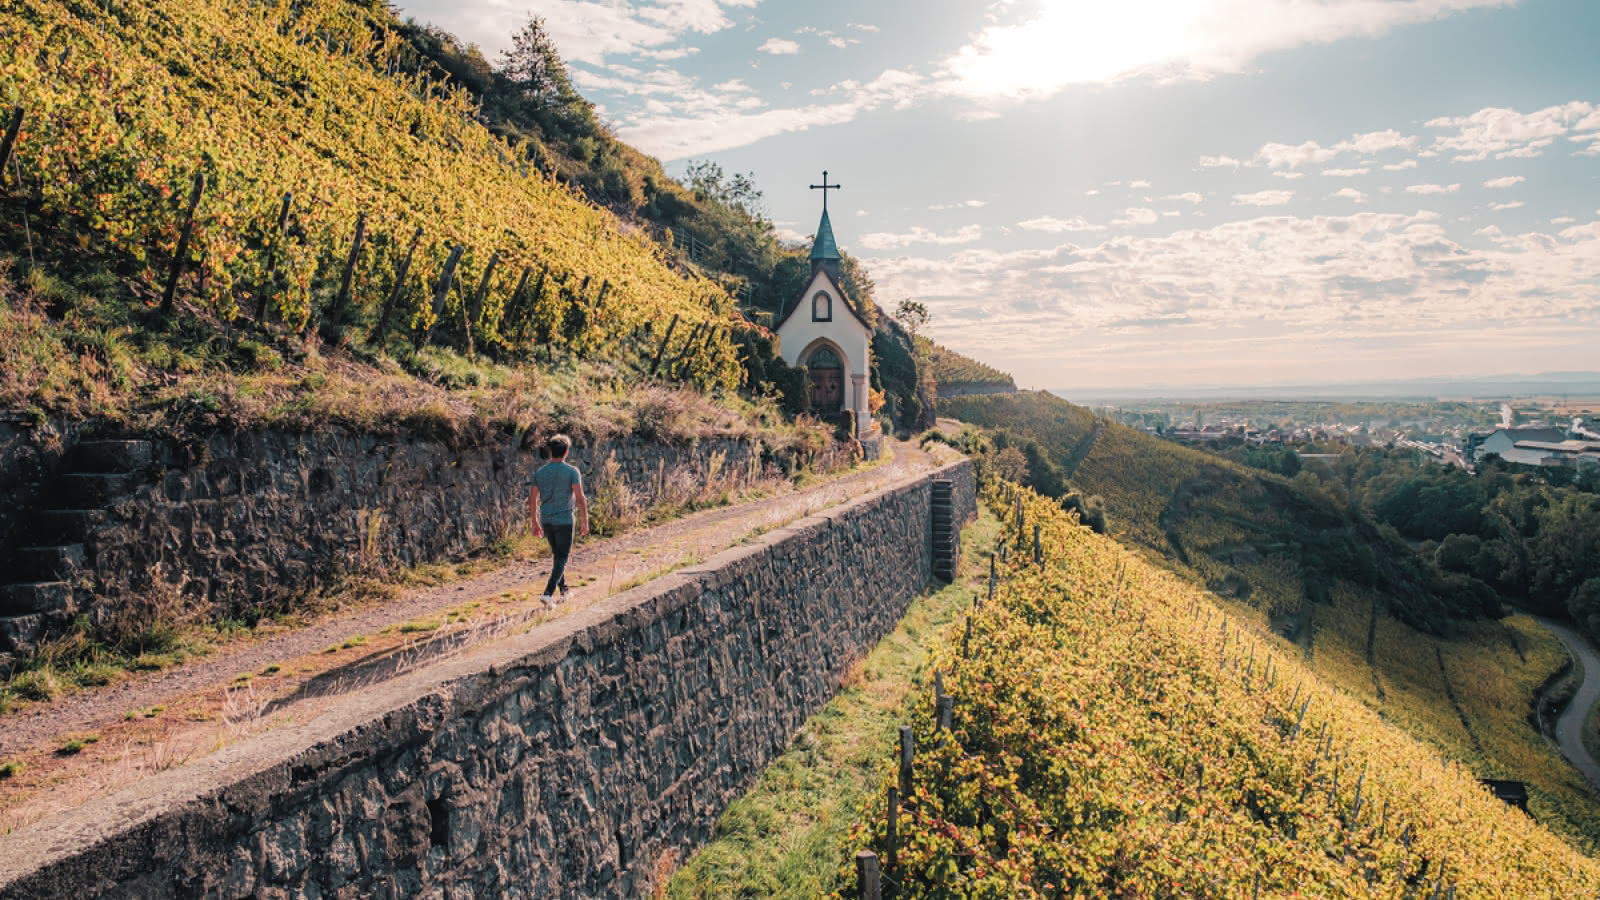 The Alsatian Wine Route: a legendary tourist trail - Alsace Wine Route